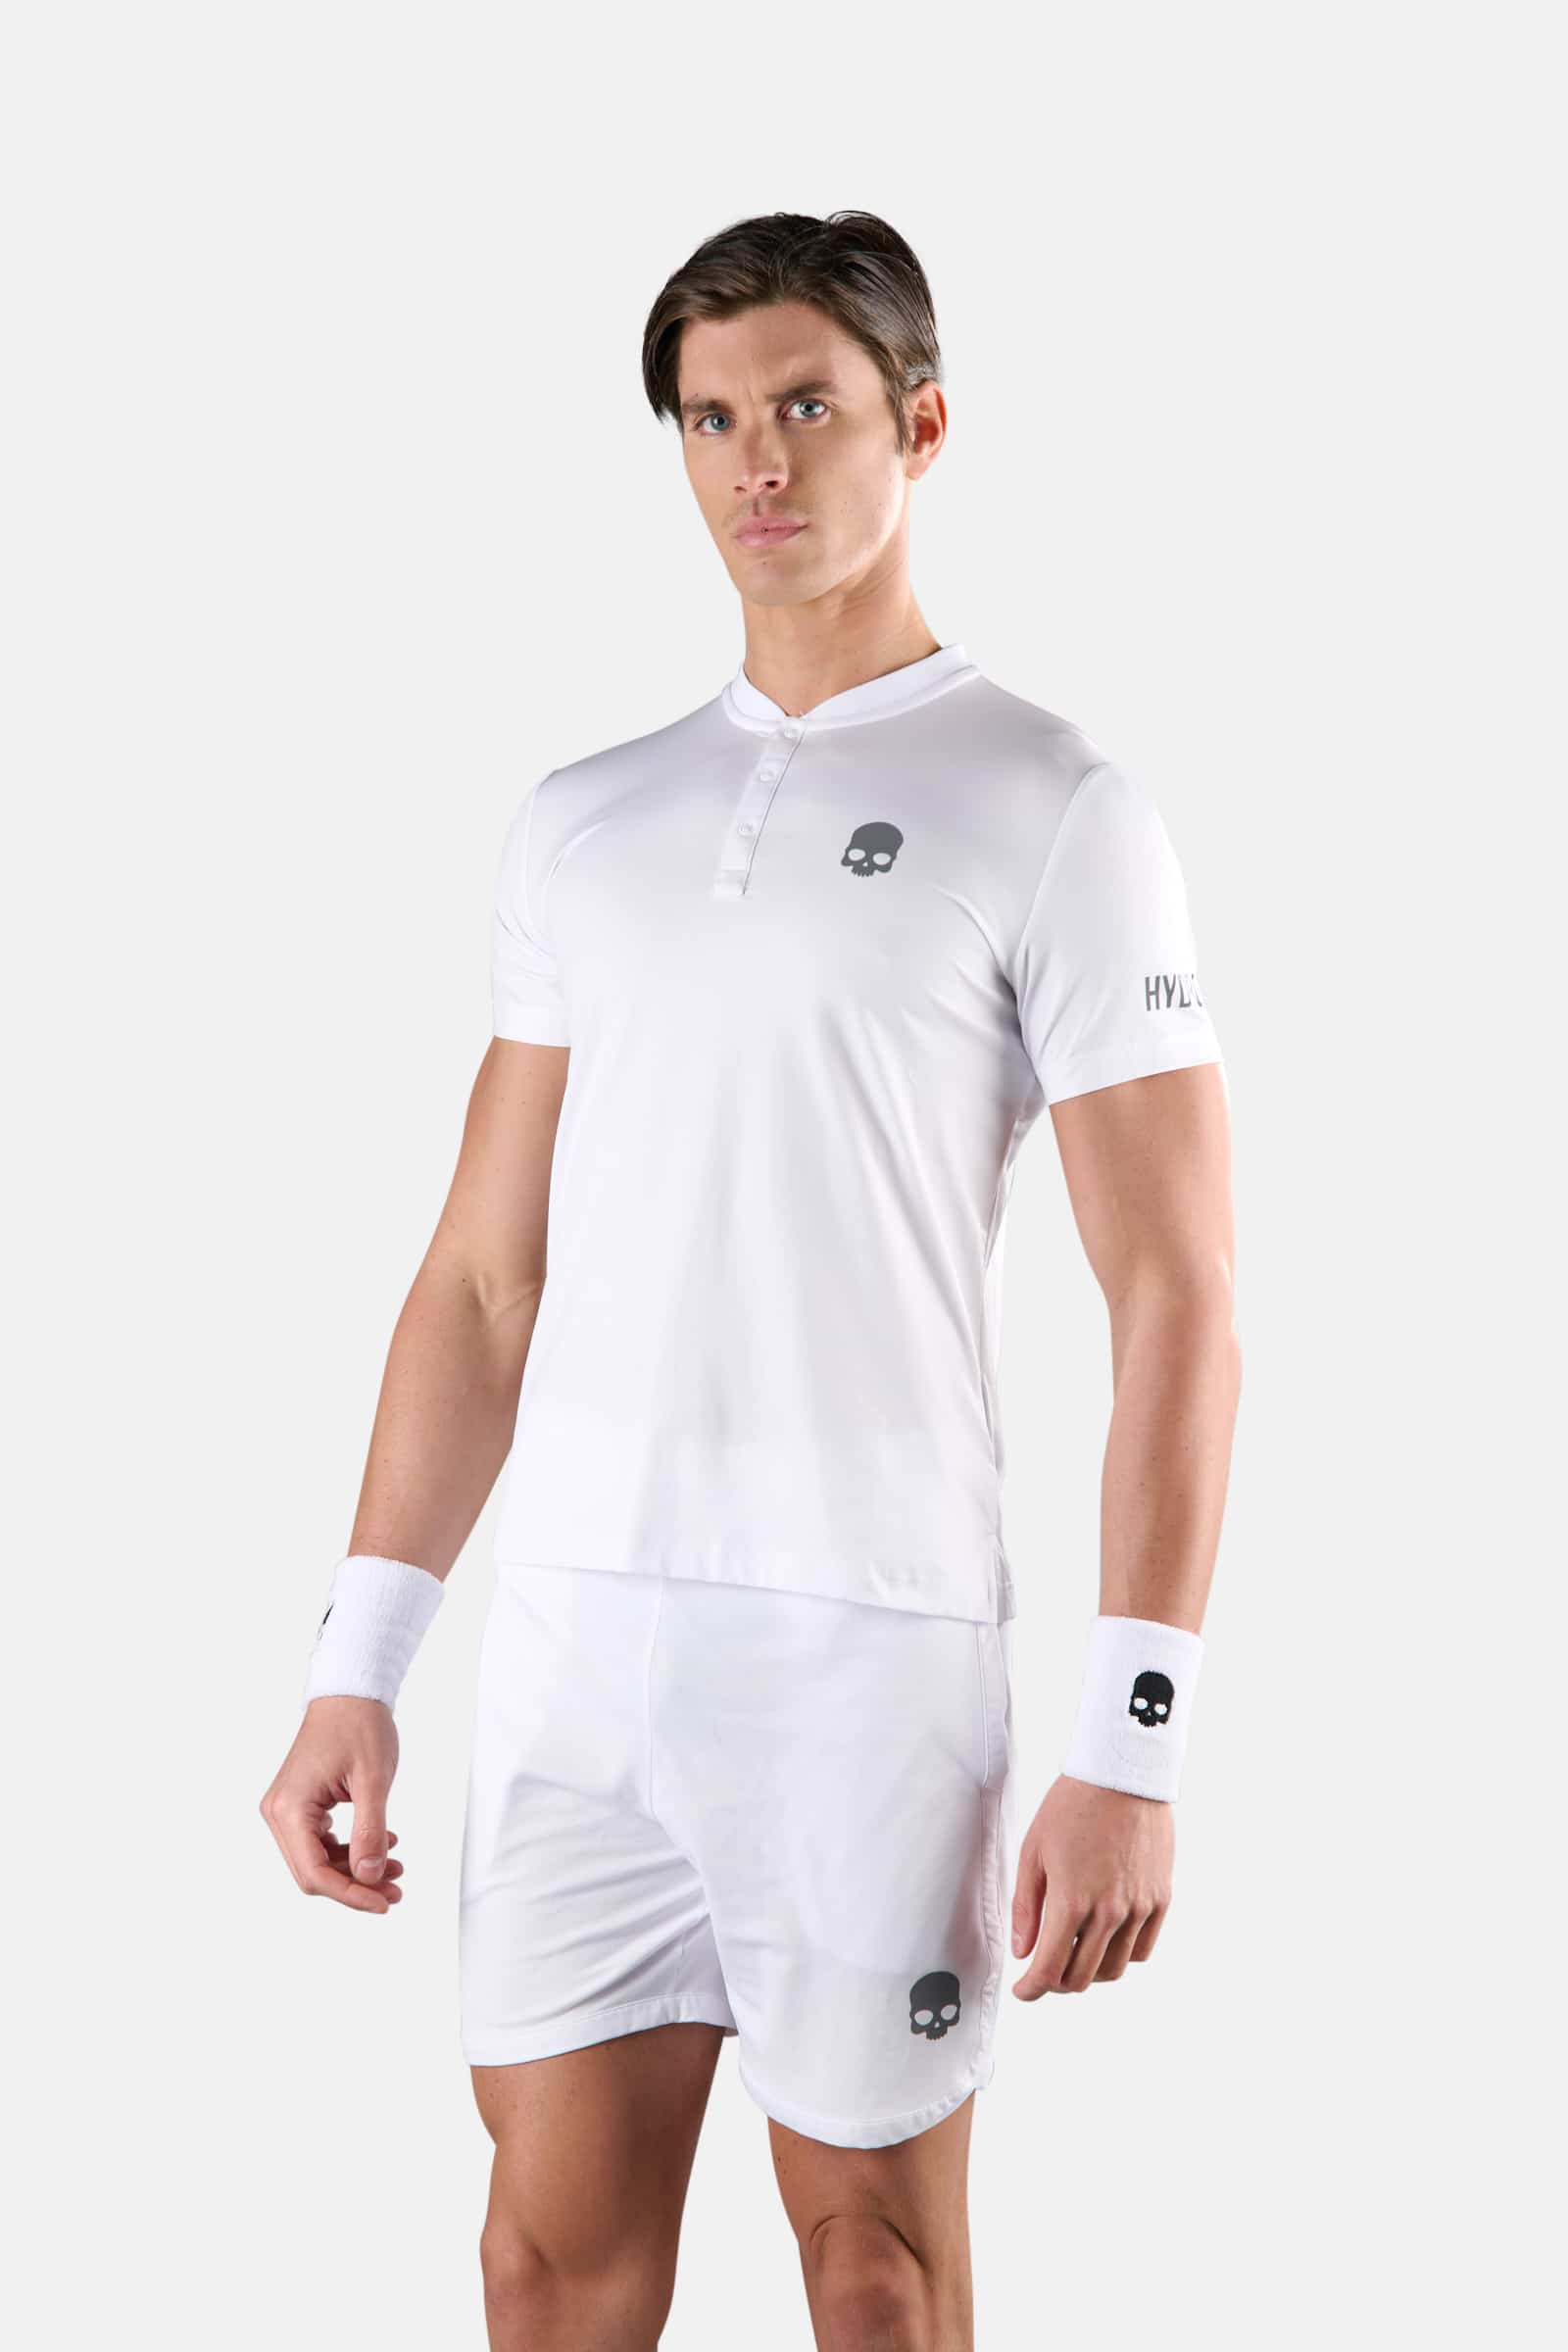 TECH SERAFINO - WHITE - Hydrogen - Luxury Sportwear